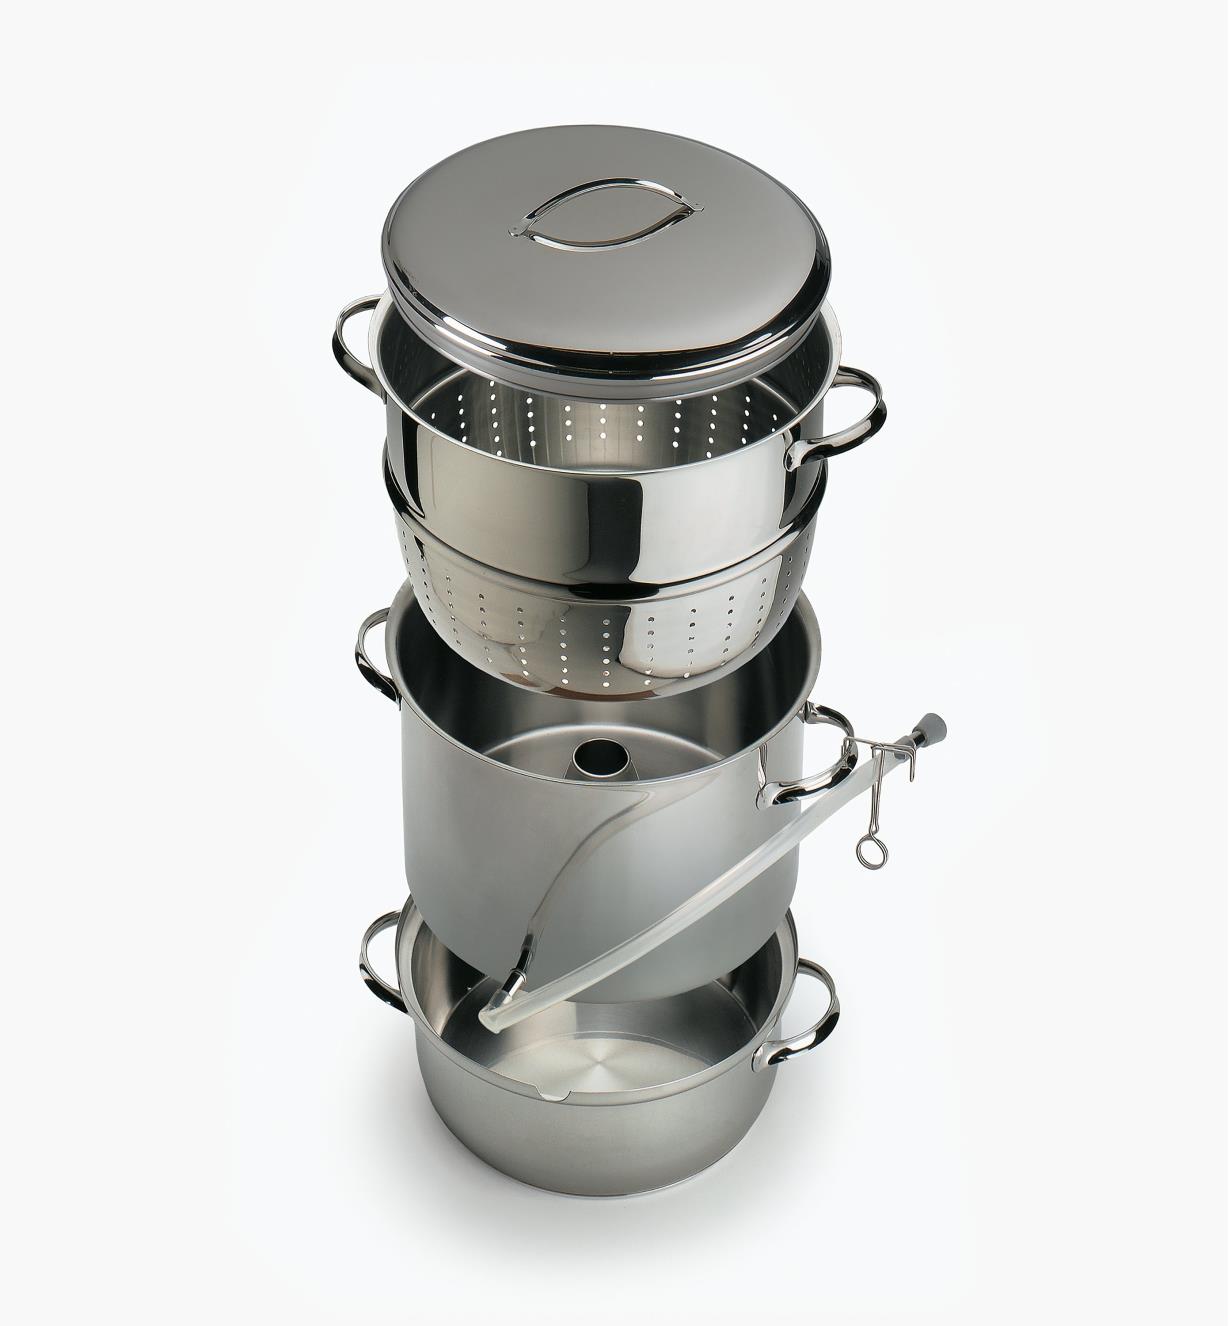 PS502 - Extracteur à jus et cuiseur à vapeur Mehu-Liisa